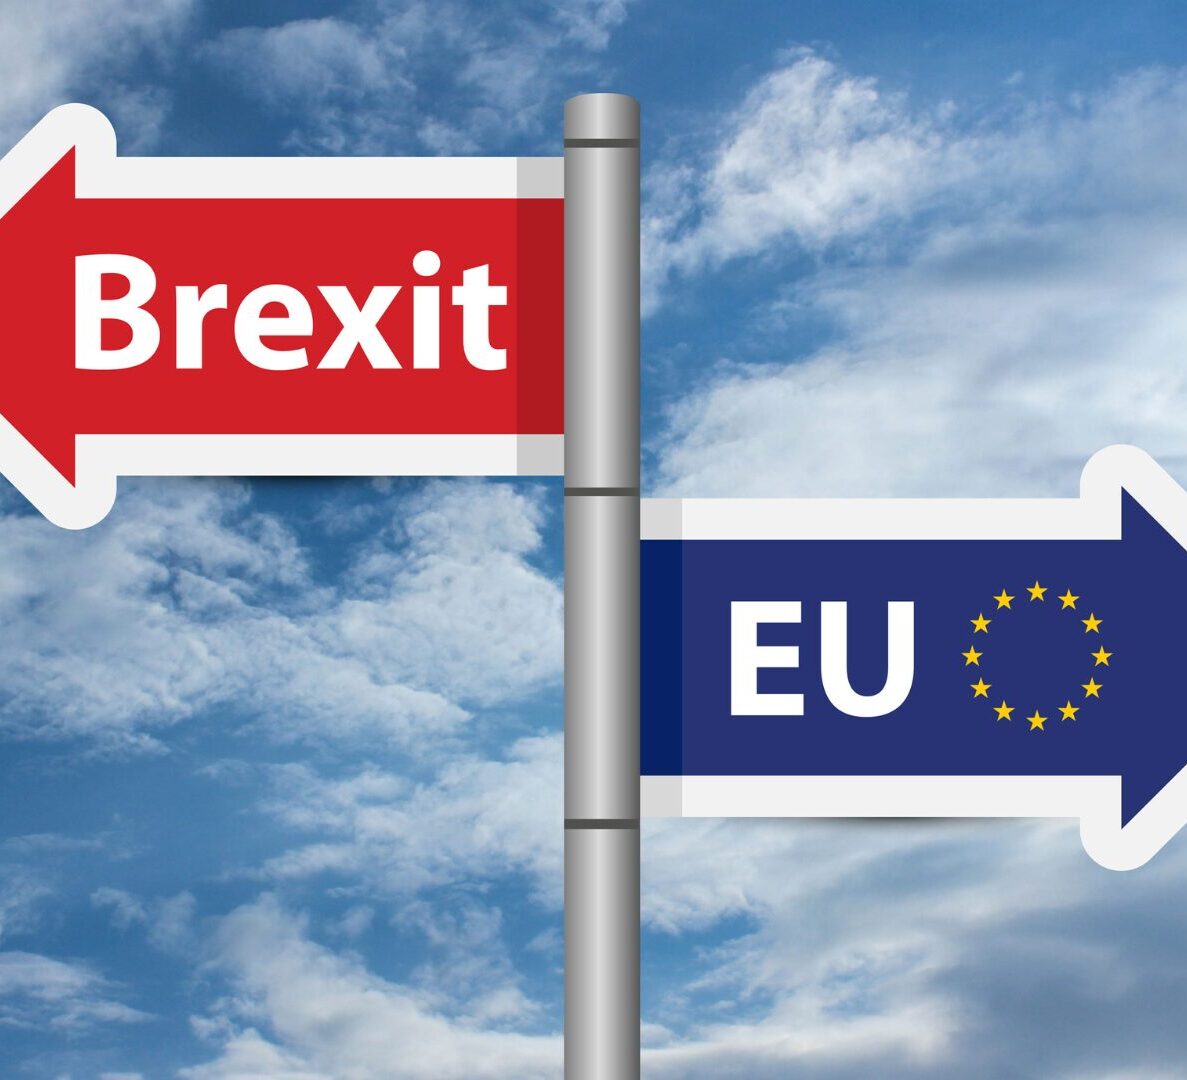 Brexit vs EU law changes sign